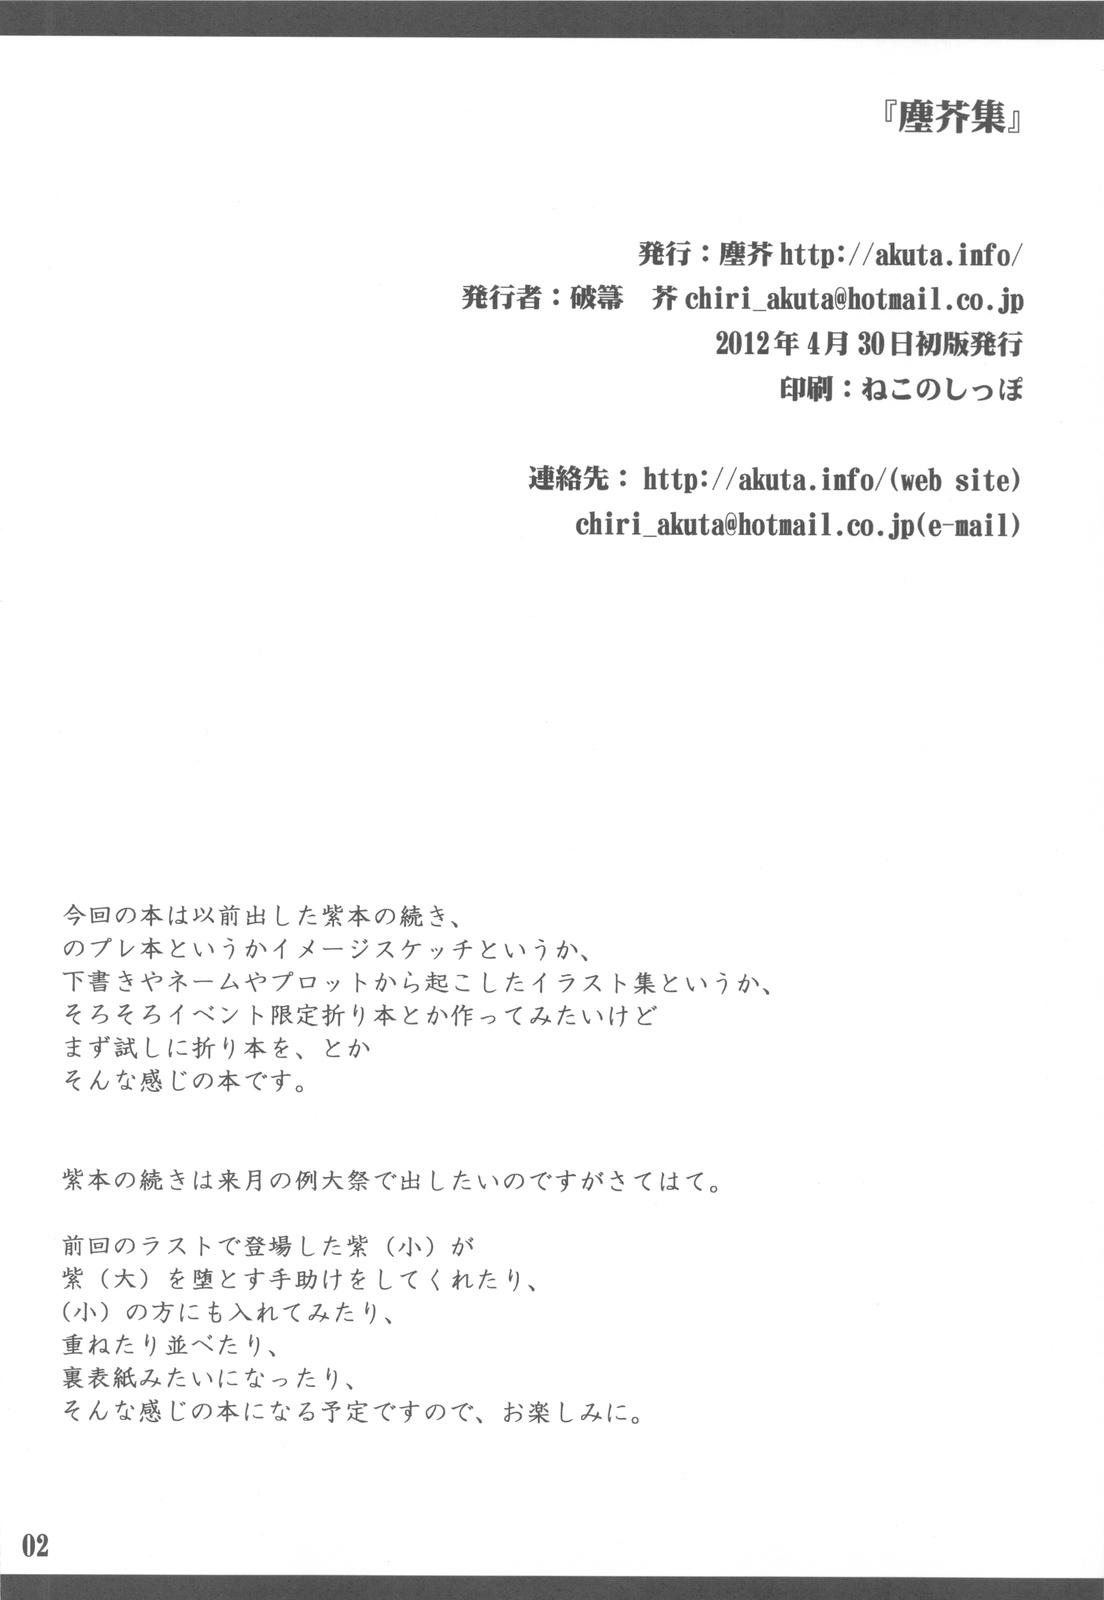 Gang Chiriakuta shuu - Touhou project Trap - Page 2